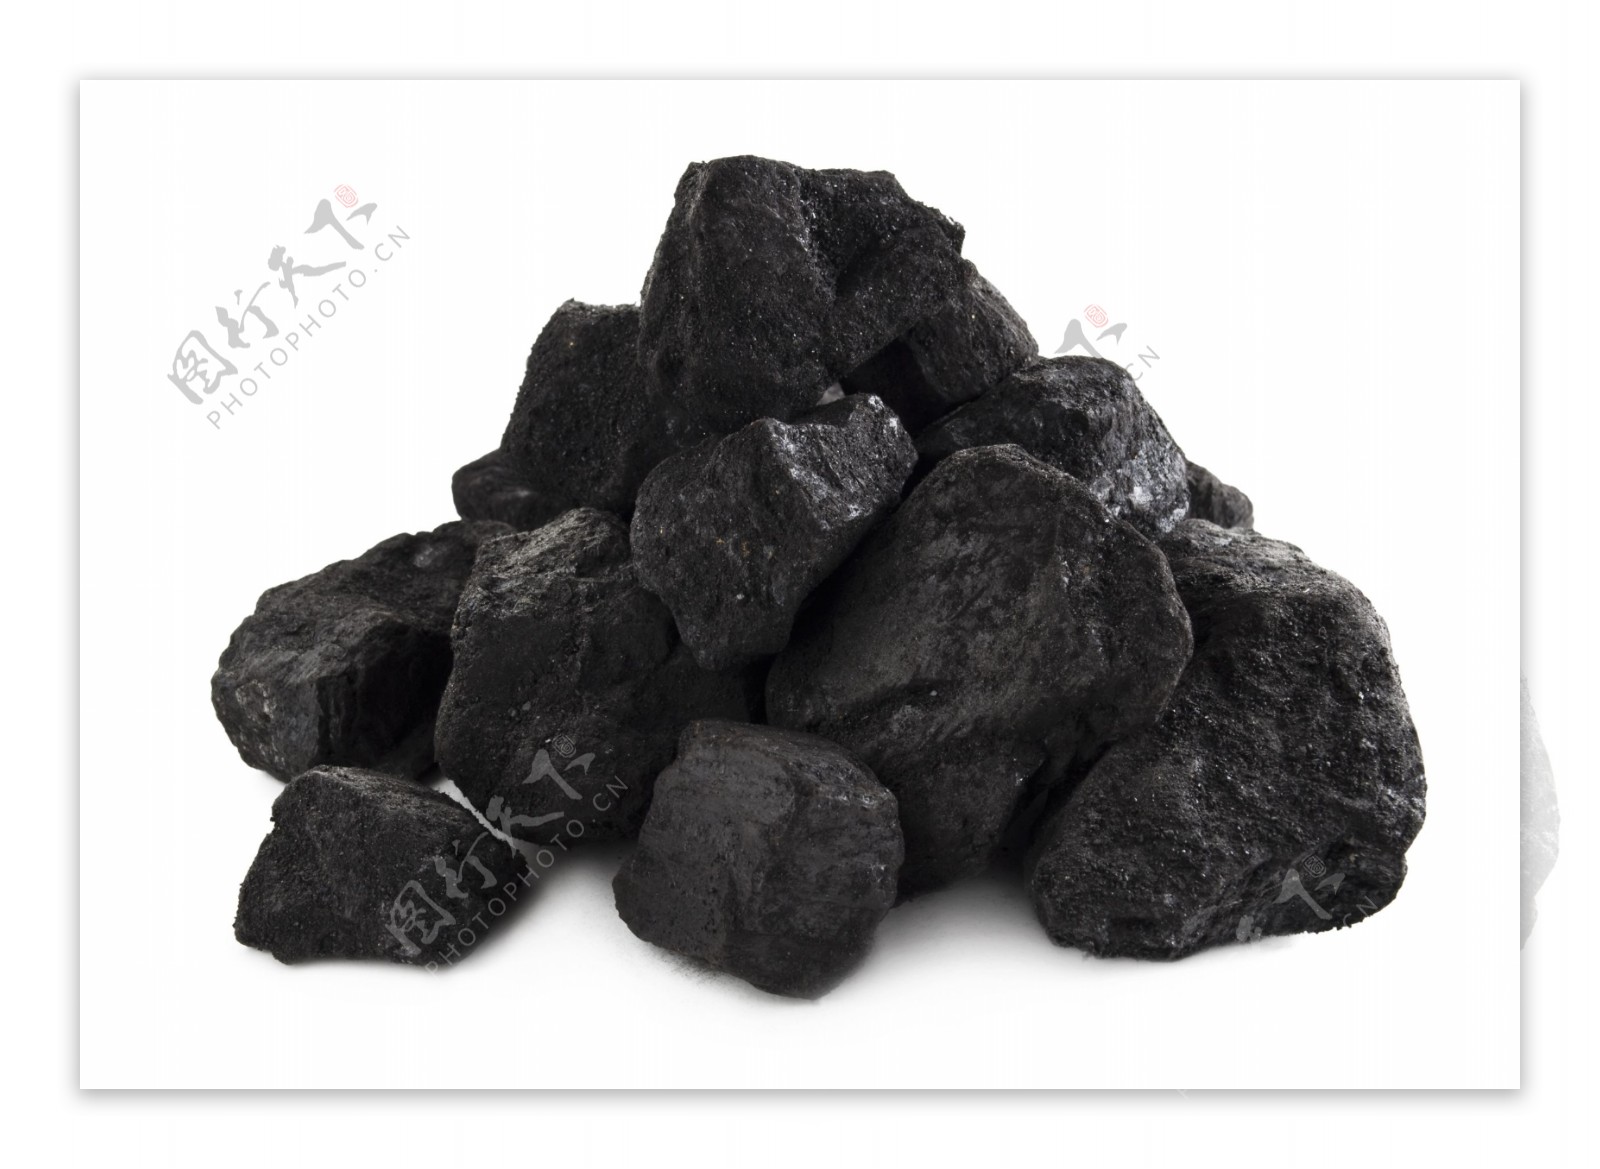 煤炭图片